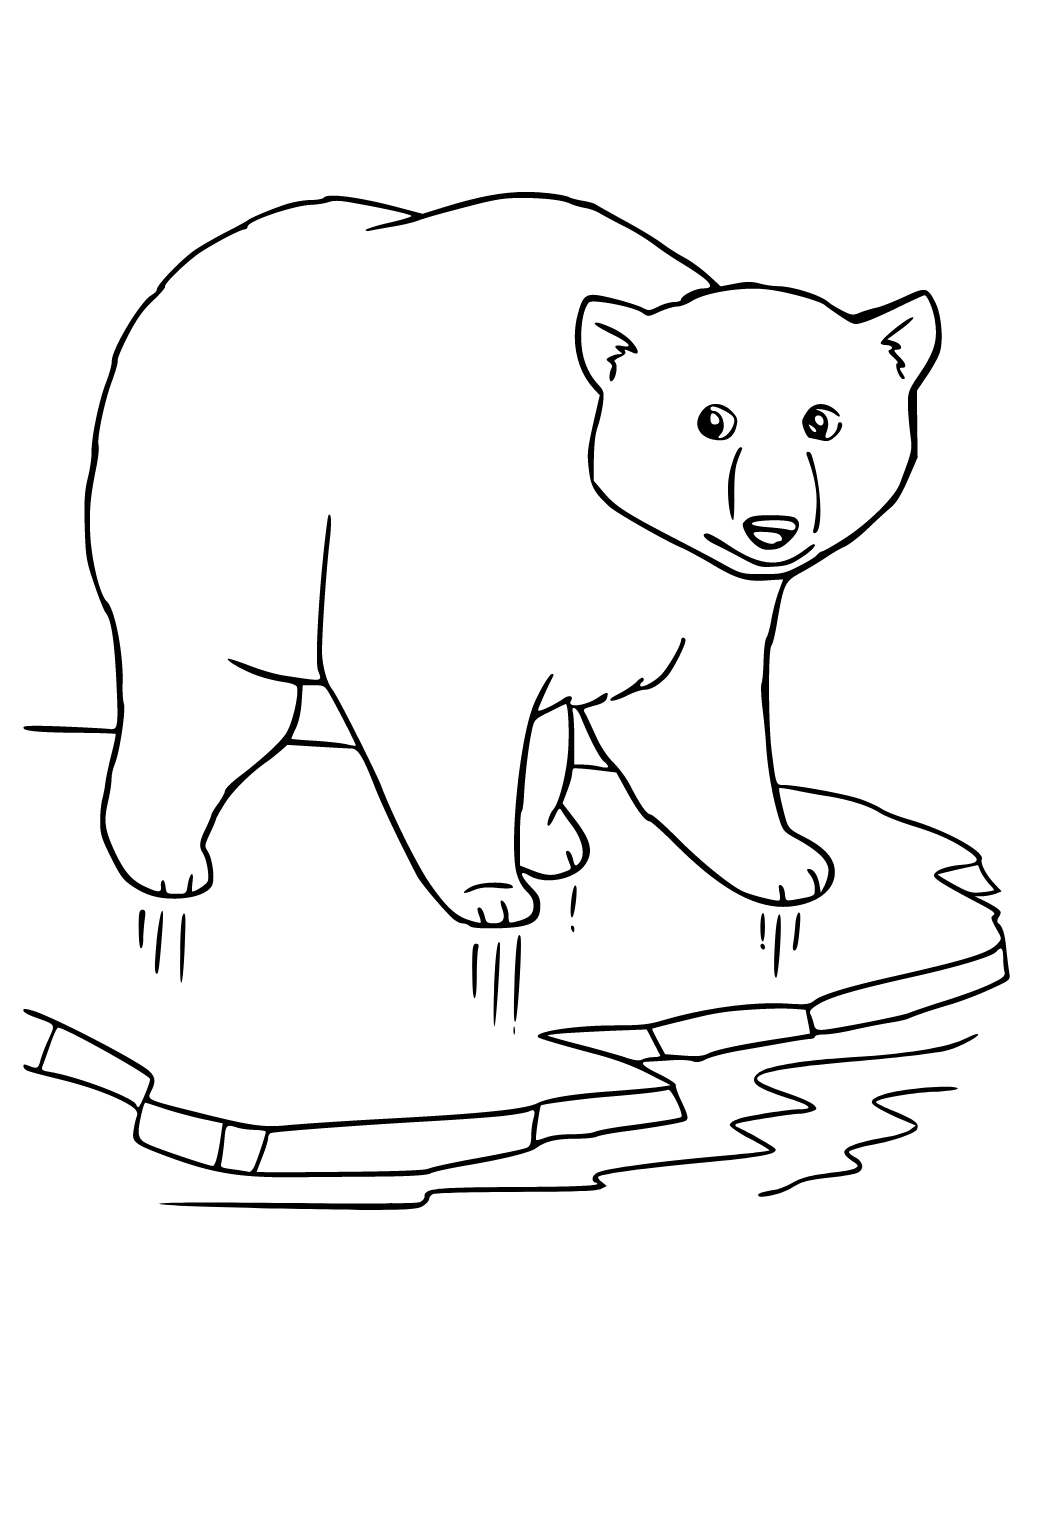 Desenho de urso engraçado no carro da polícia. jogo de papel de